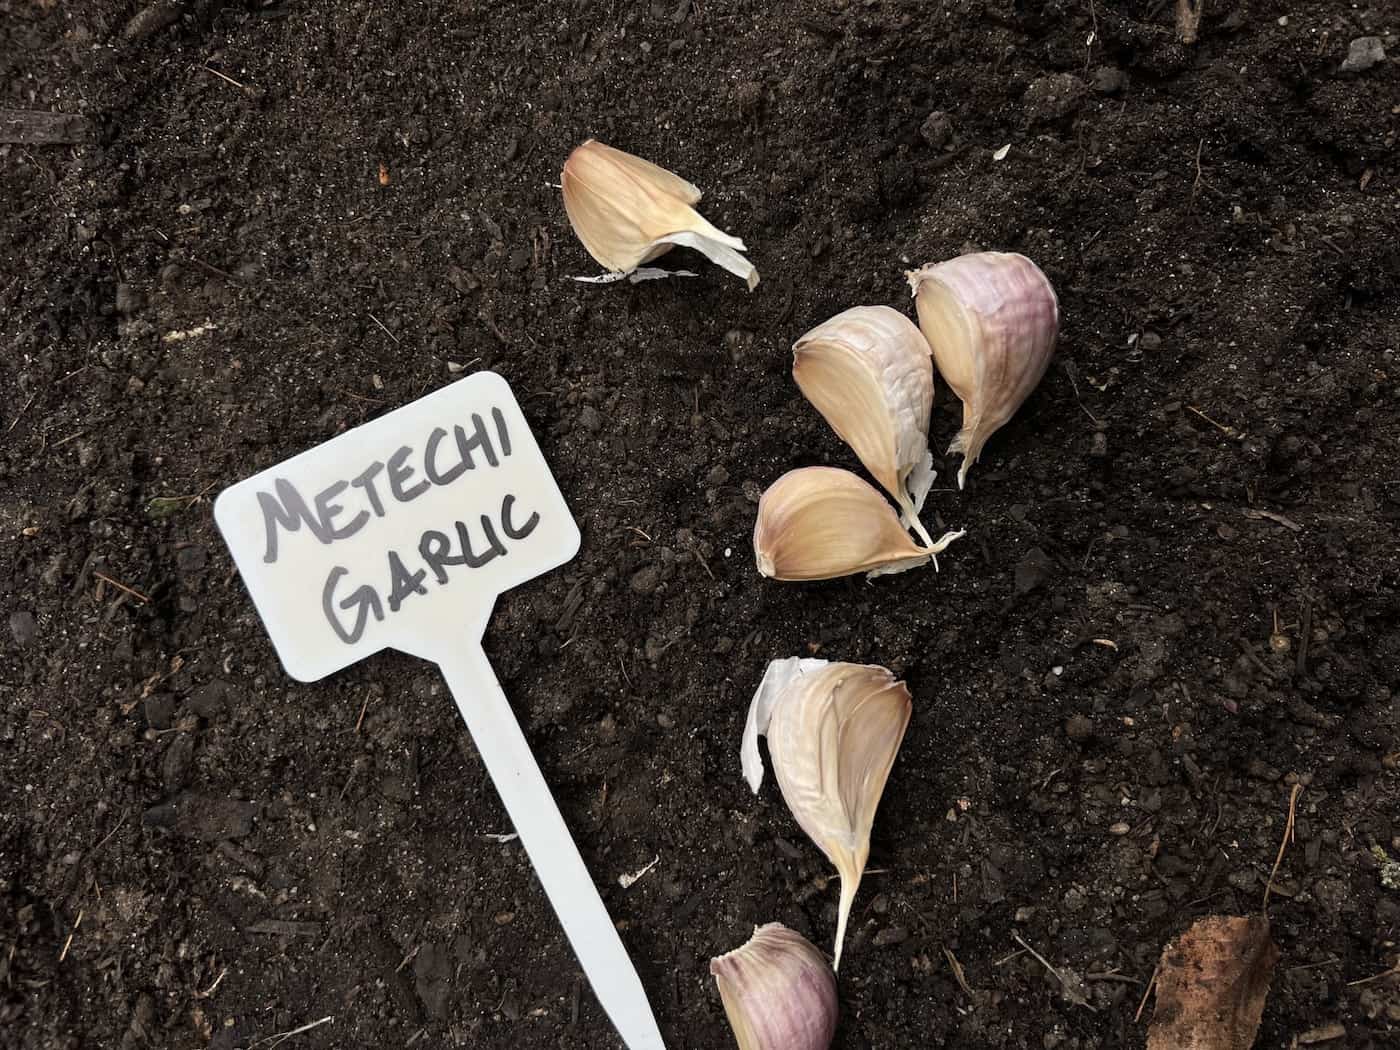 Planting garlic cloves - metechi